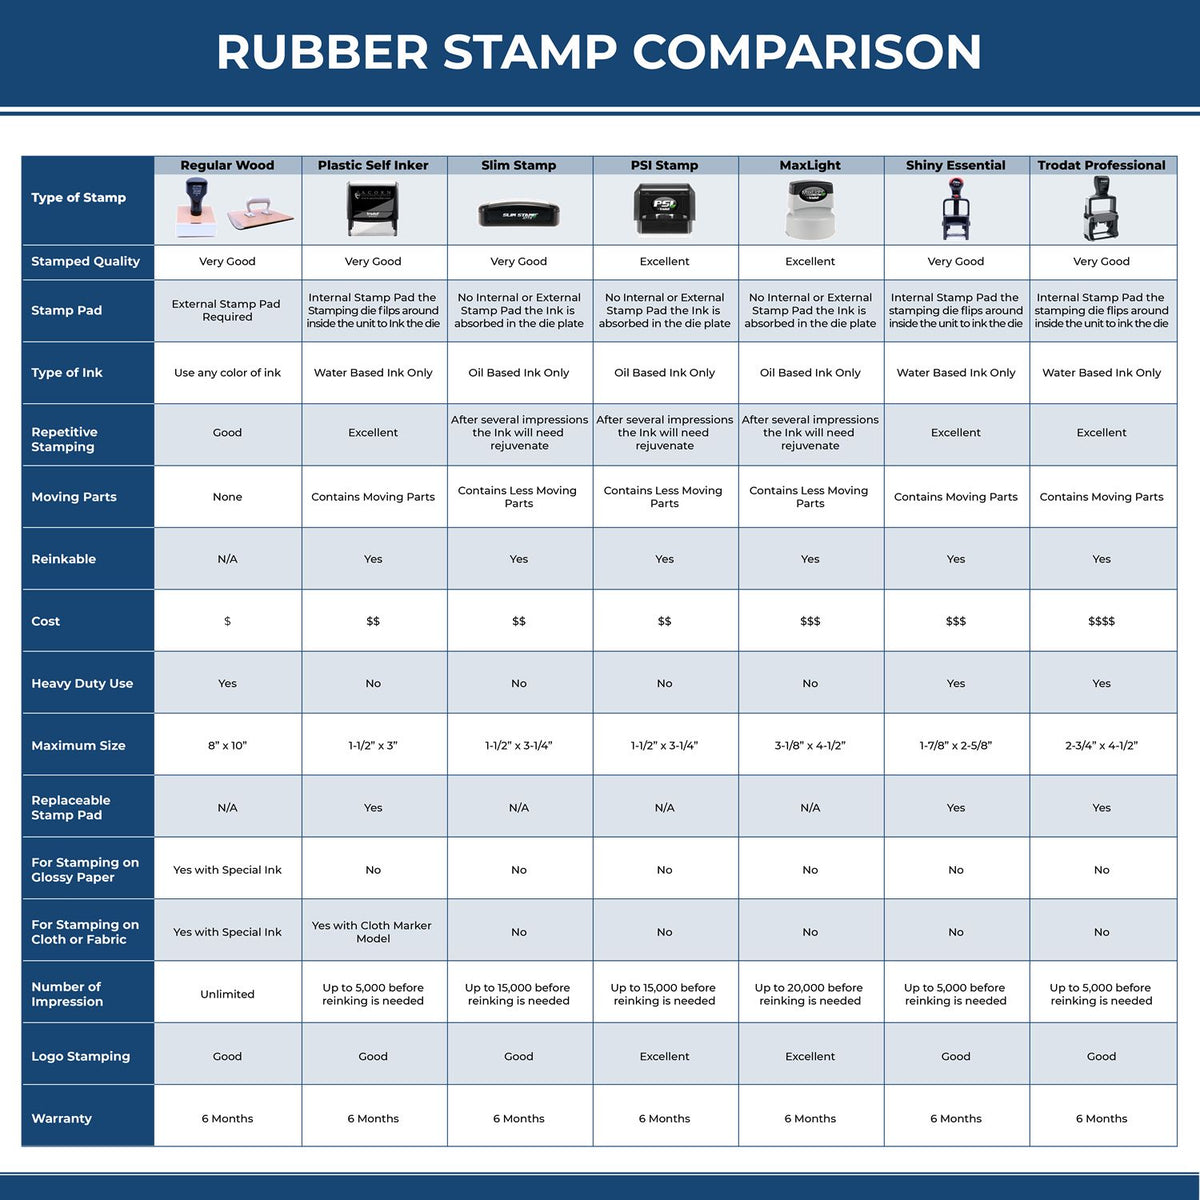 Spoiled Rubber Stamp 4770R Rubber Stamp Comparison